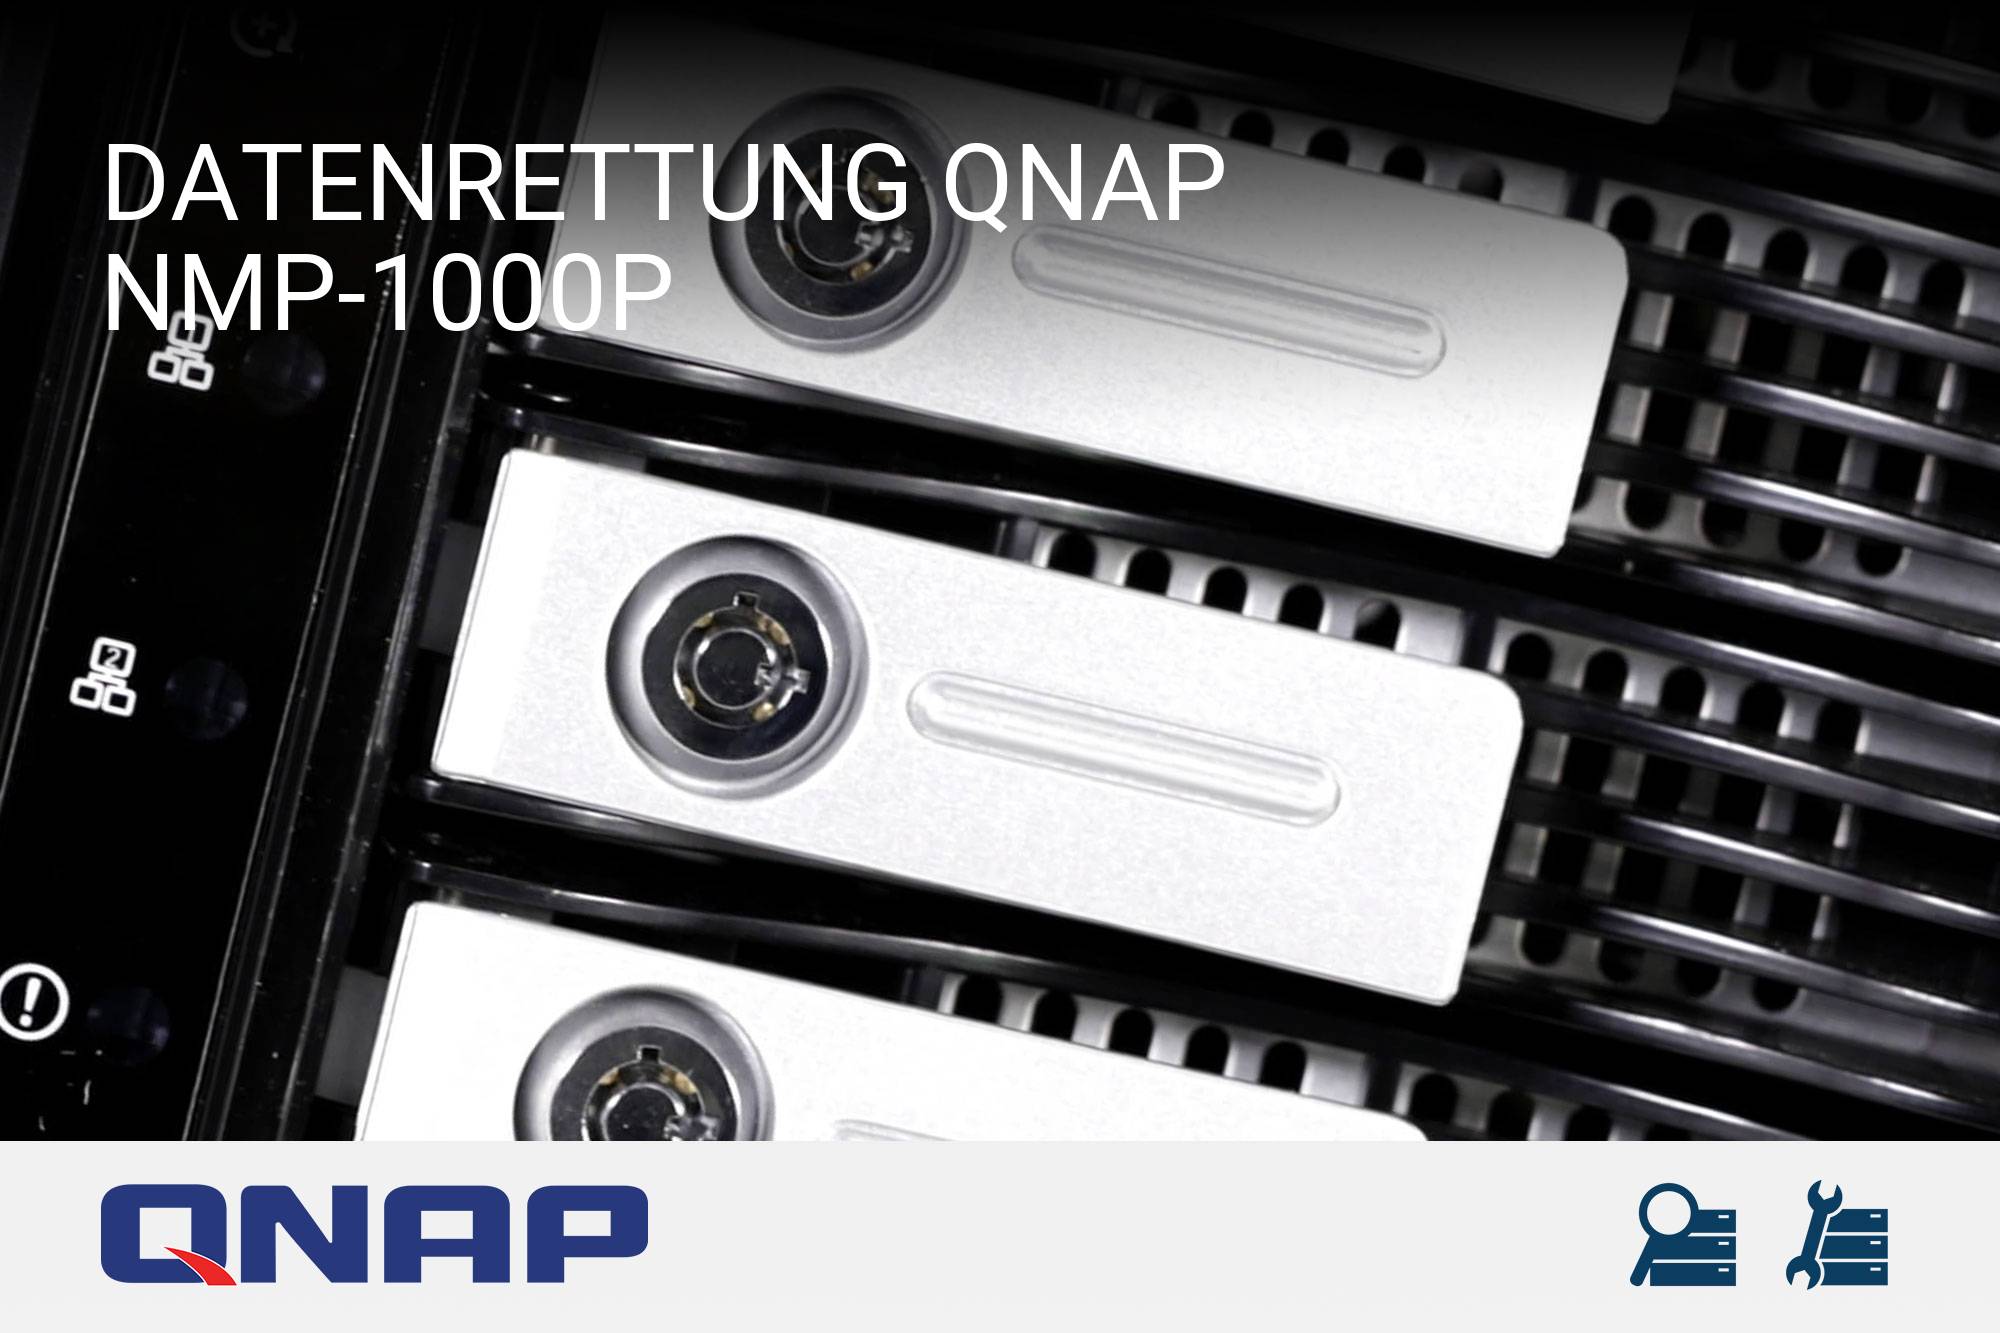 QNAP NMP-1000P